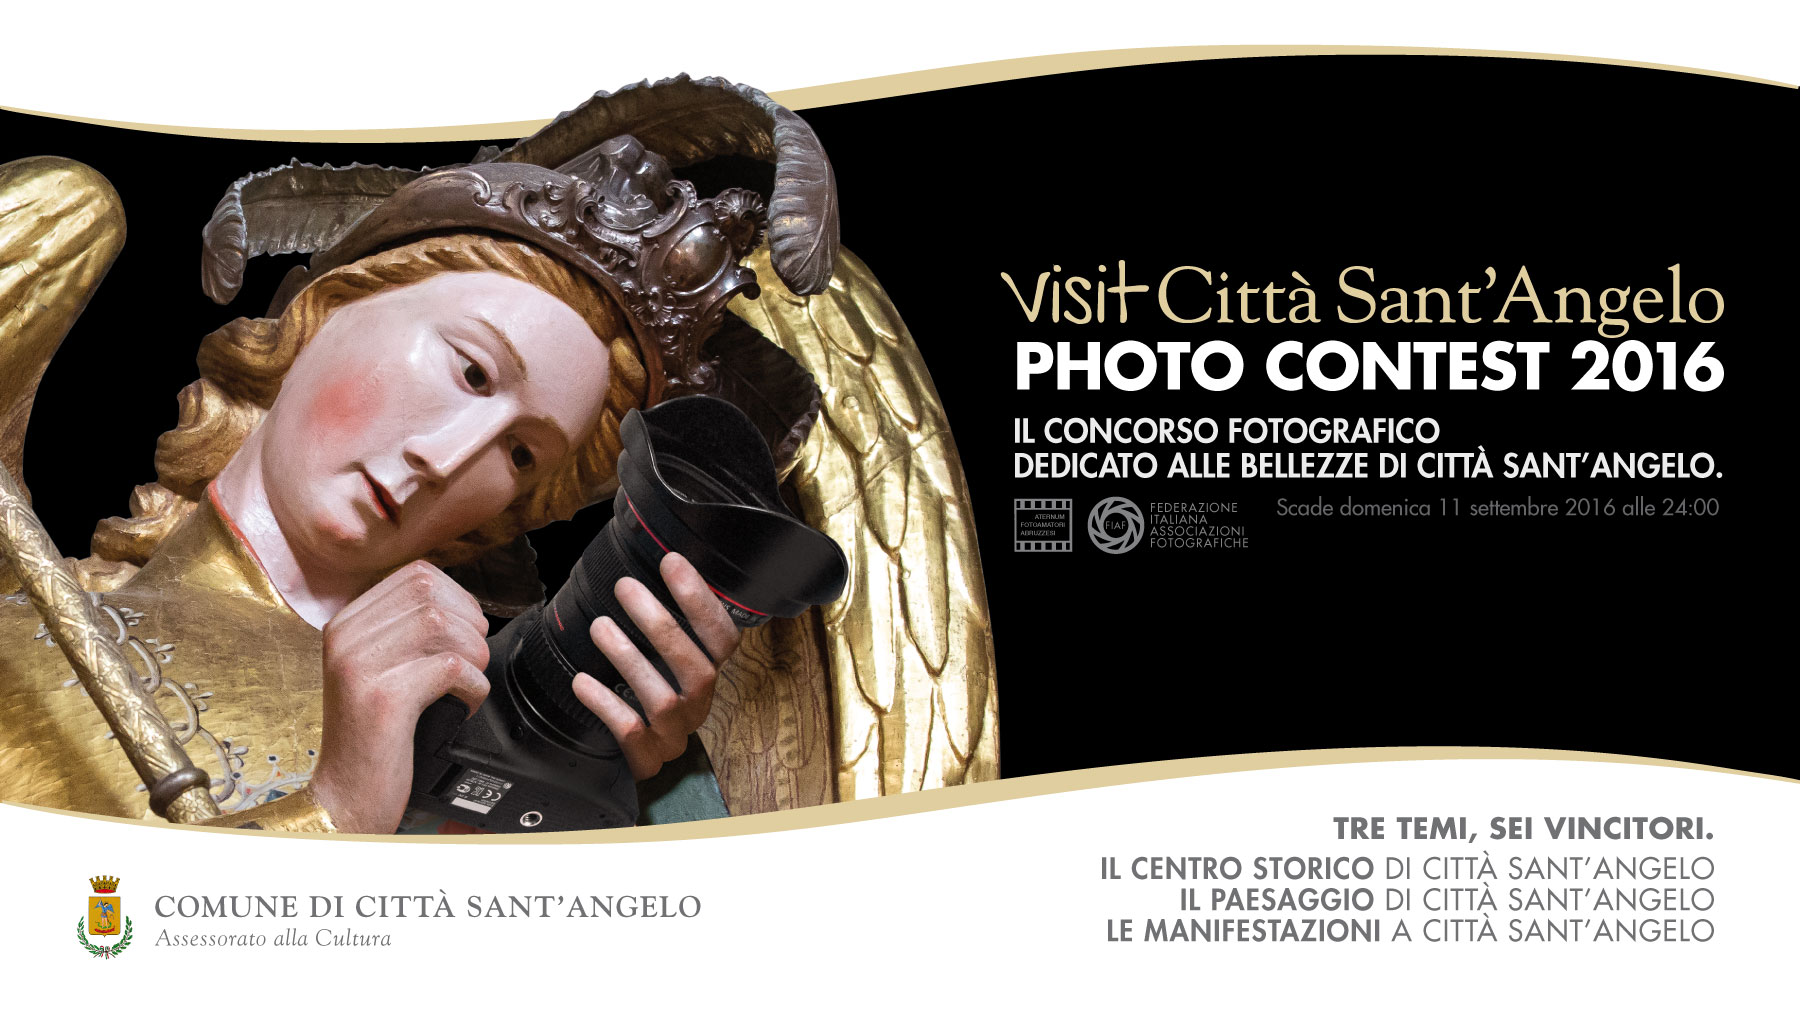 Visit Città Sant‘Angelo PHOTO CONTEST 2016 - Il concorso fotografico dedicato alle bellezze di Città Sant‘Angelo.